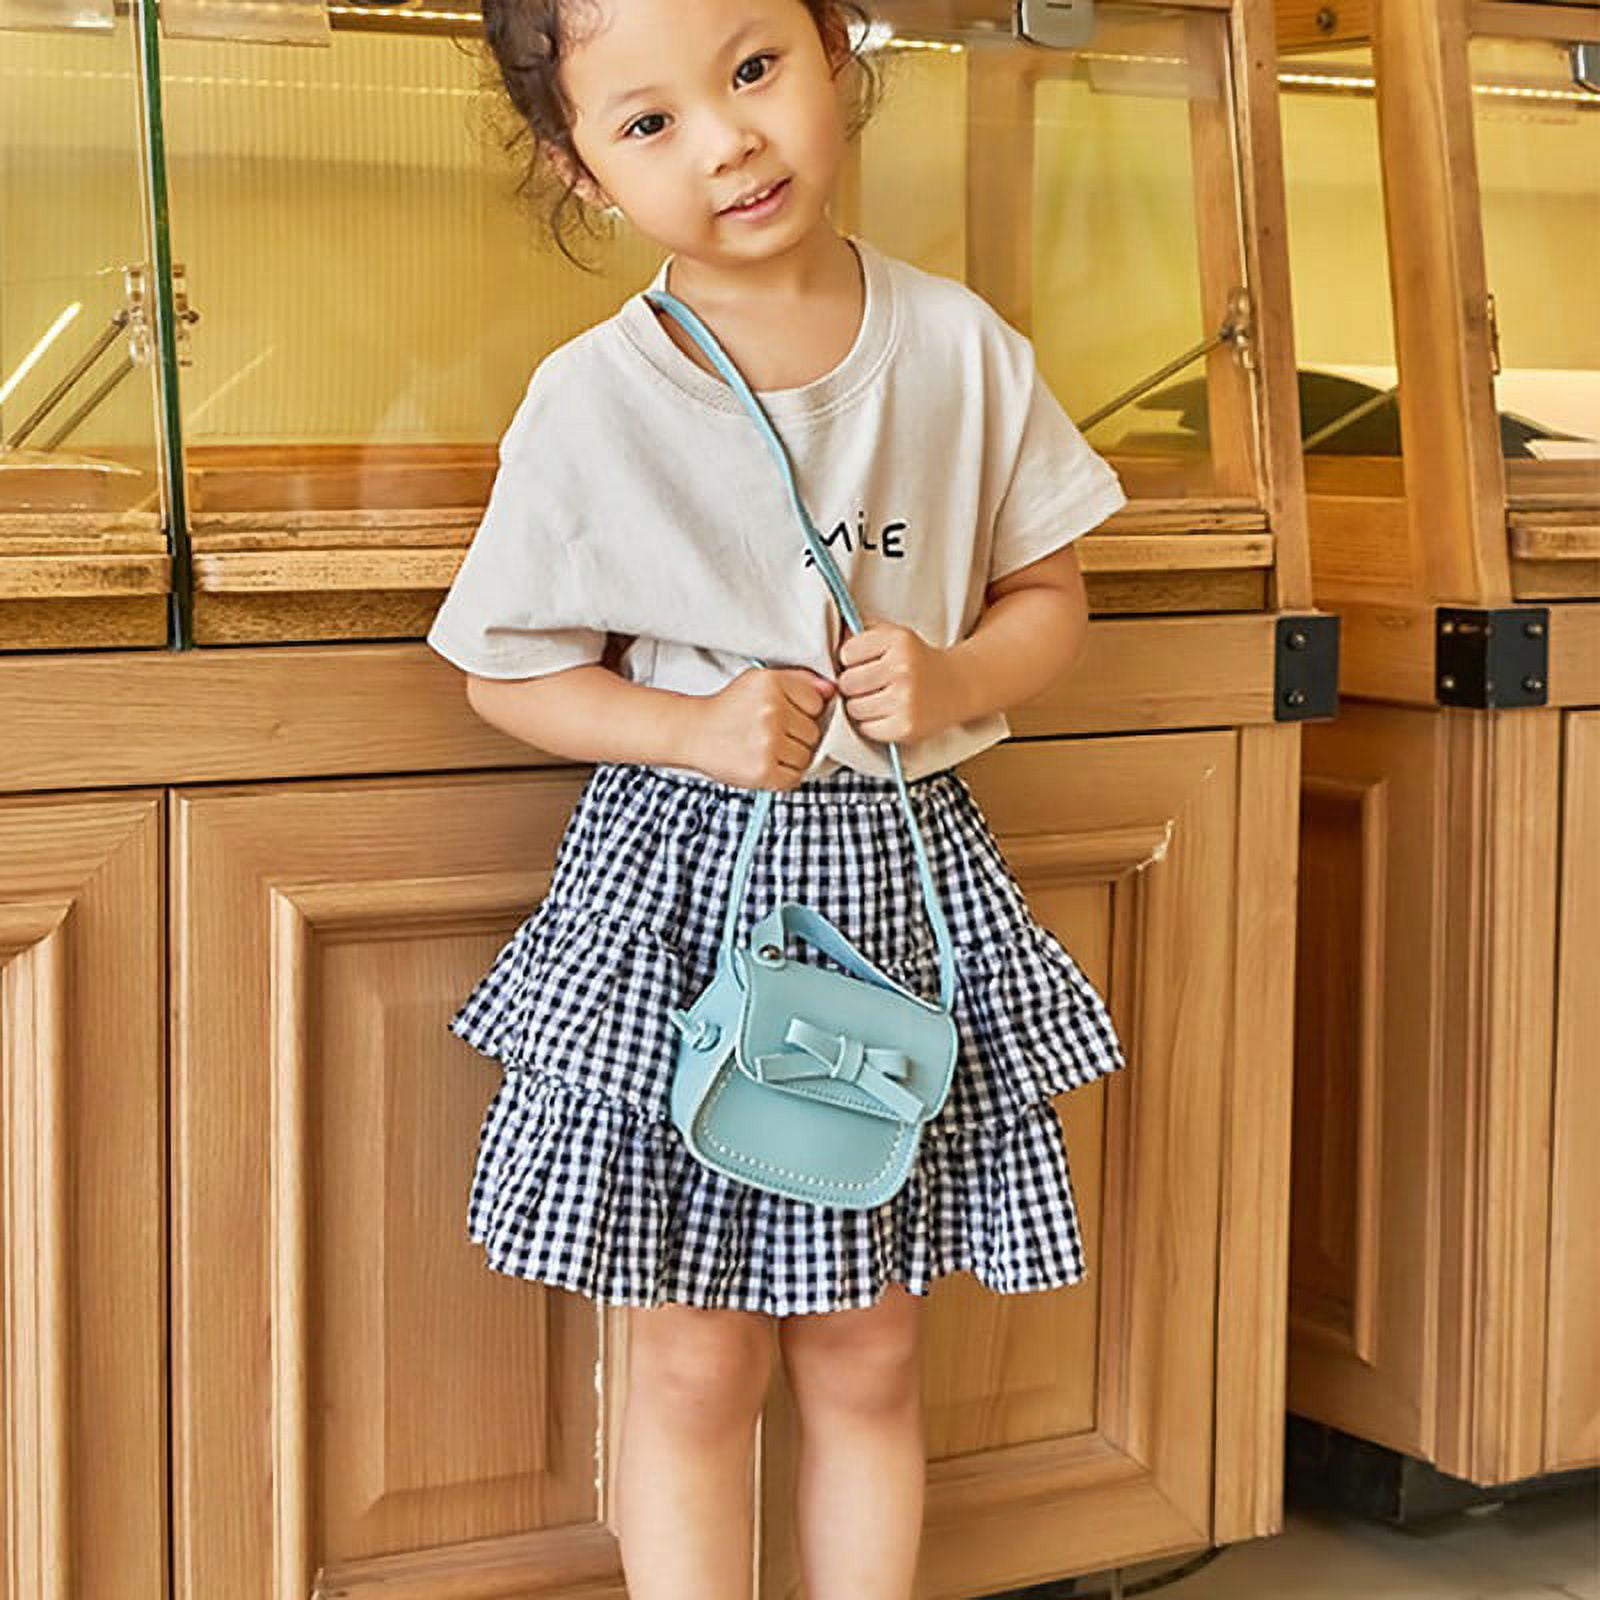 Elenxs Baby Girls Lovely Mini Messenger Bag